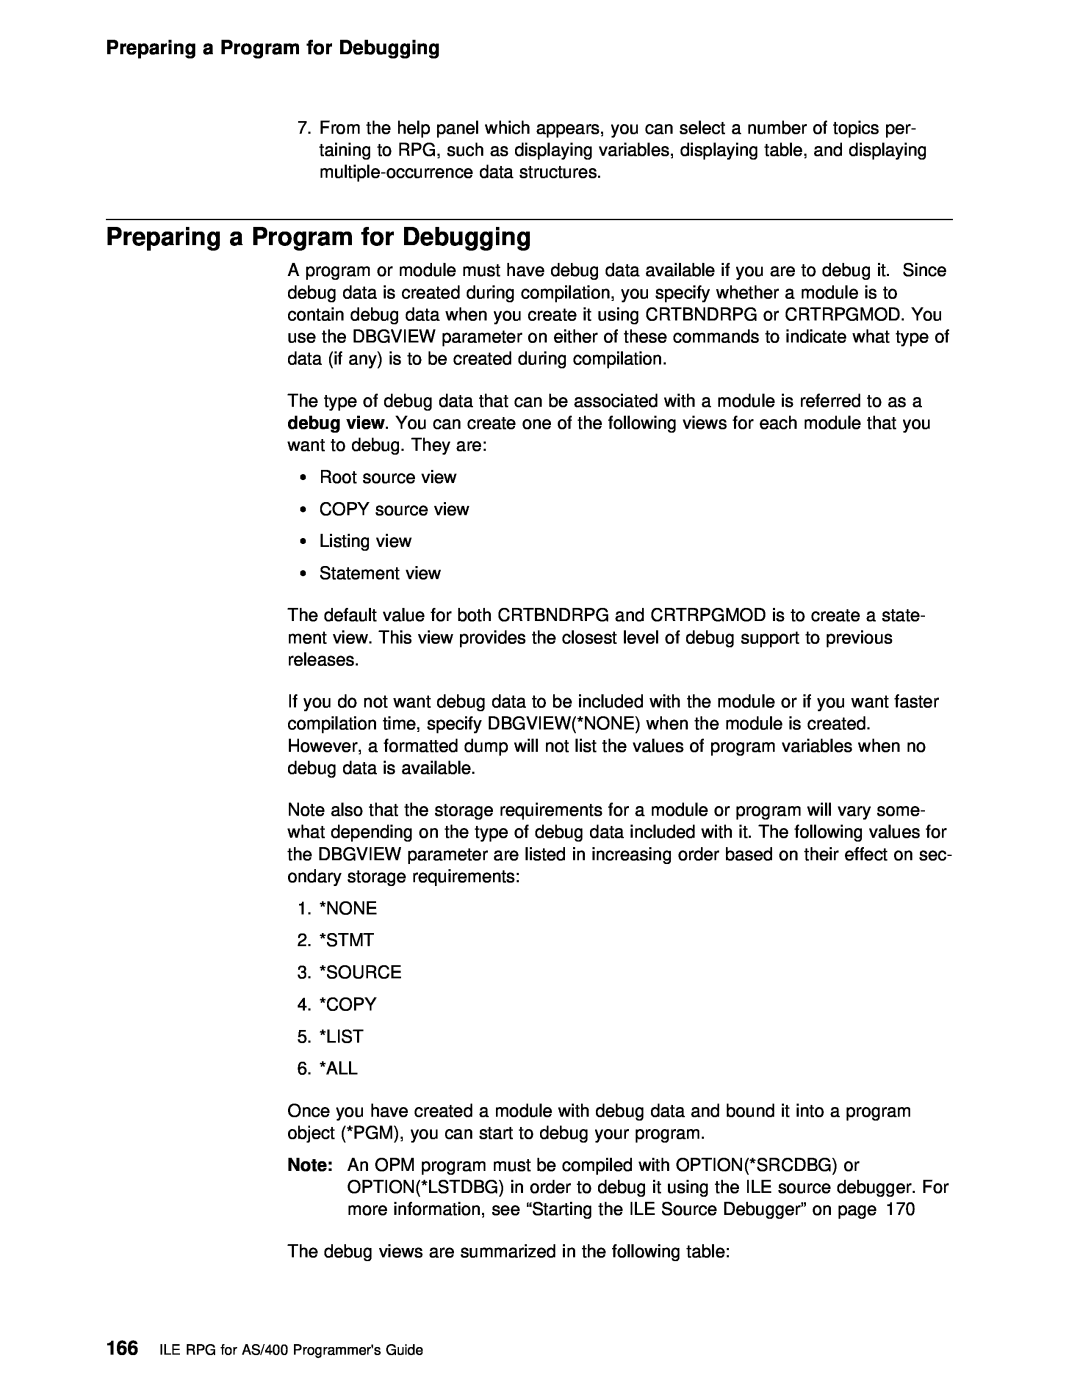 IBM AS/400 manual Preparing a Program for Debugging 